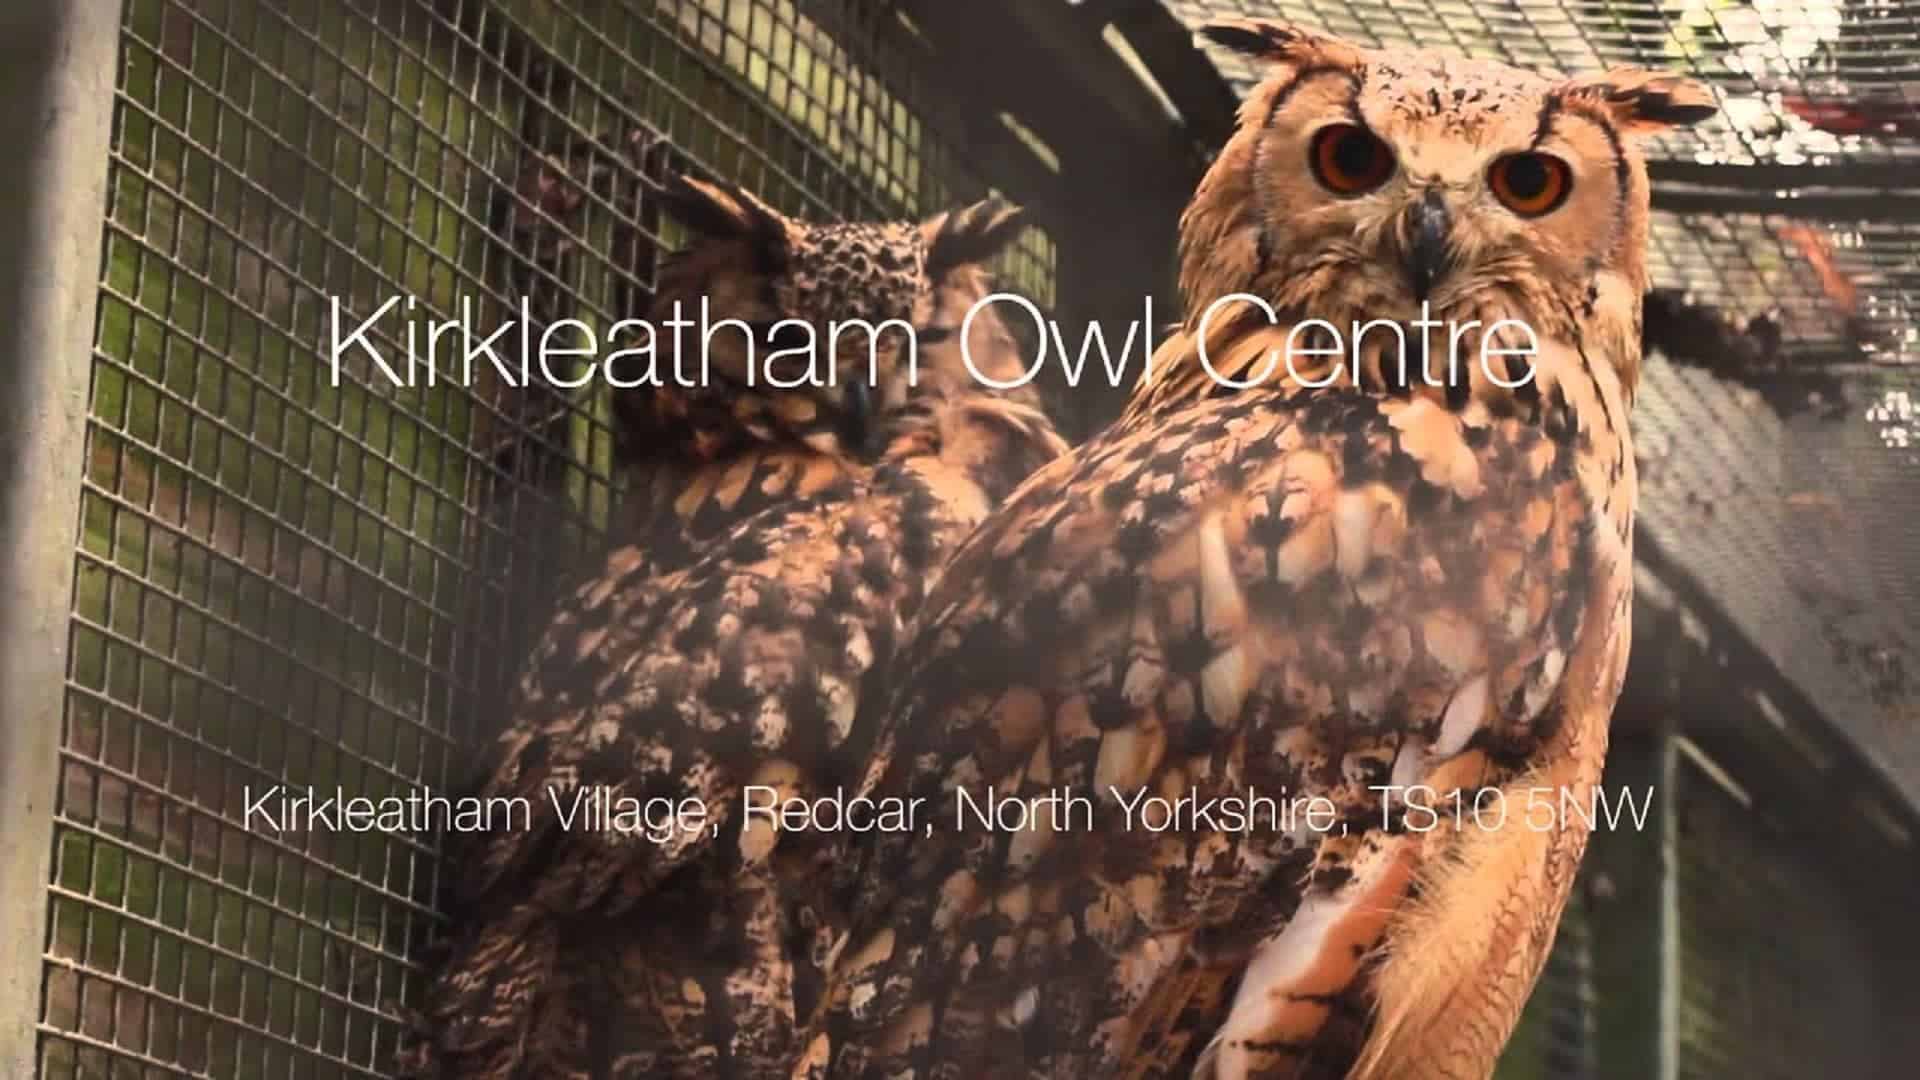 Kirkleatham Owl Centre in UK